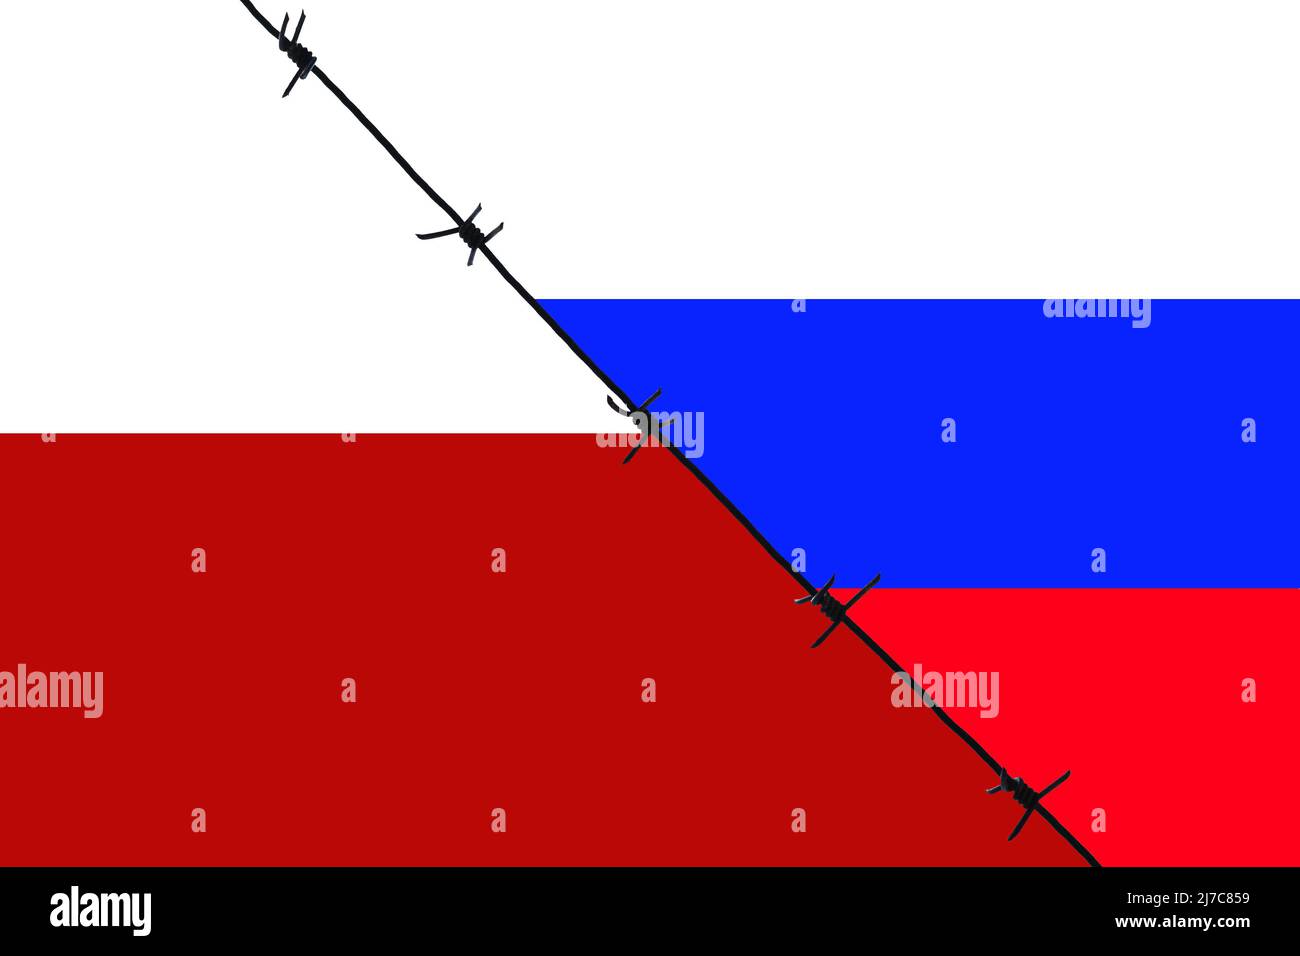 Stacheldraht, der die Flaggen Polens und Russlands trennt. Stacheldraht ist ein Symbol für Konflikte. Stockfoto